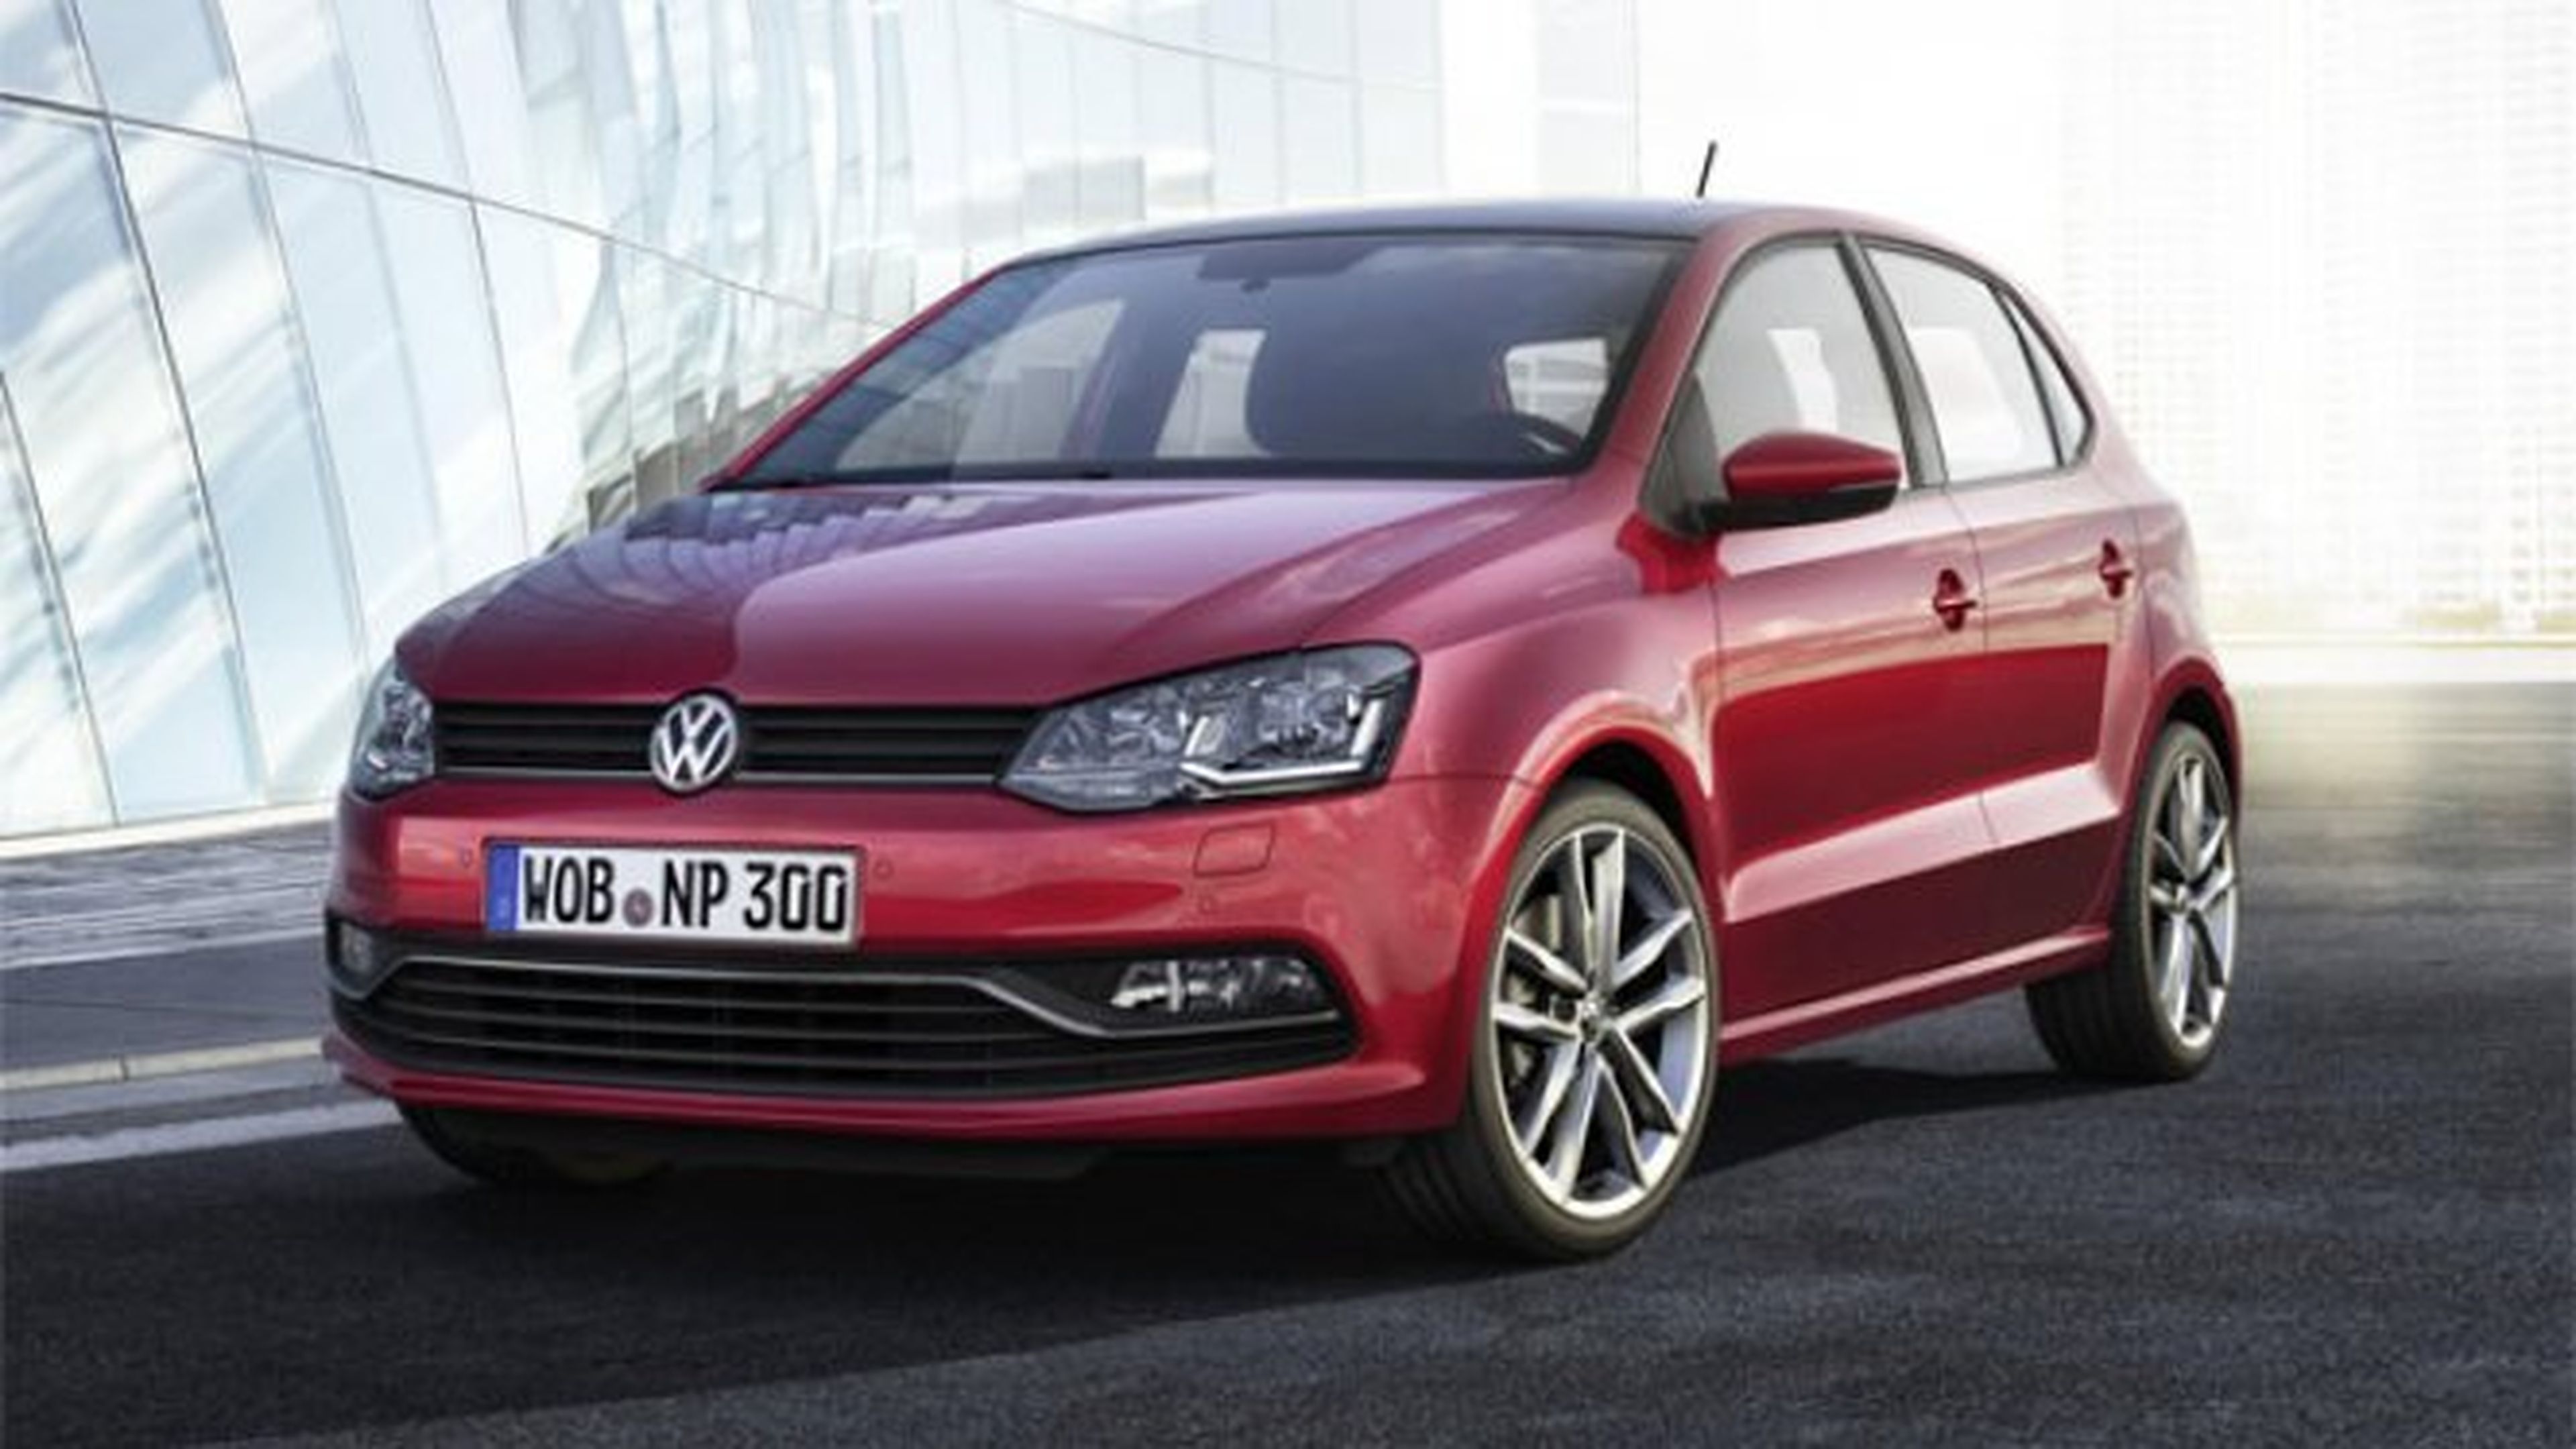 Volkswagen confirma sus inversiones en España a Soria